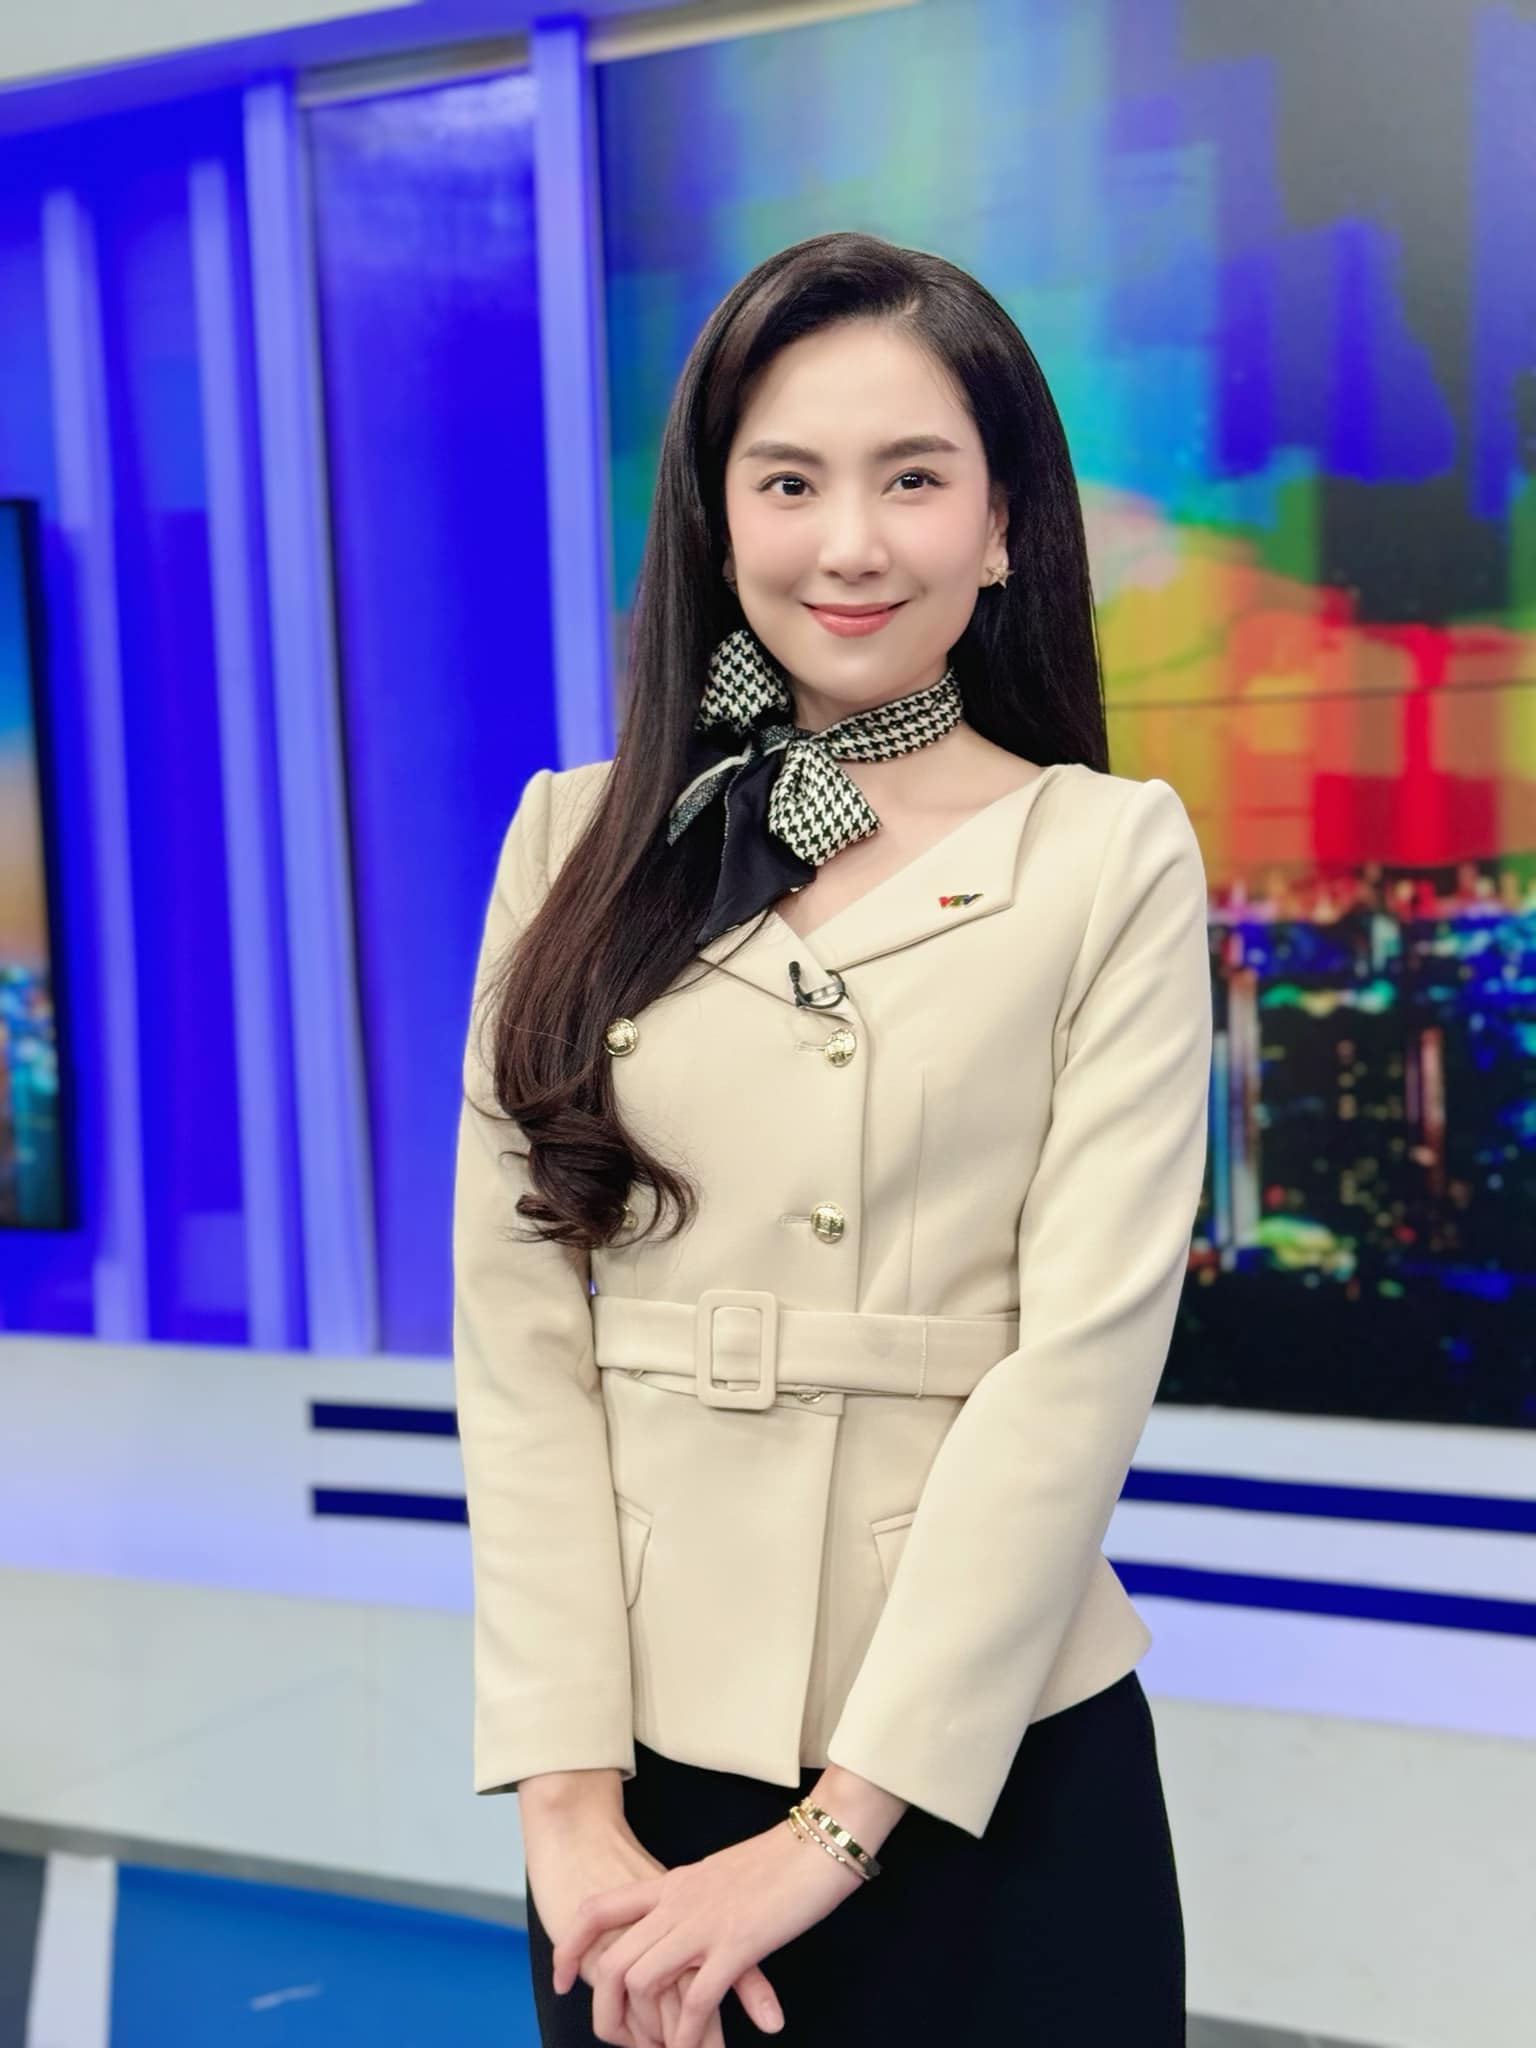 MC đẹp nhất VTV - Mai Ngọc thông báo ly hôn chồng sau 17 năm gắn bó, không có con chung - ảnh 3